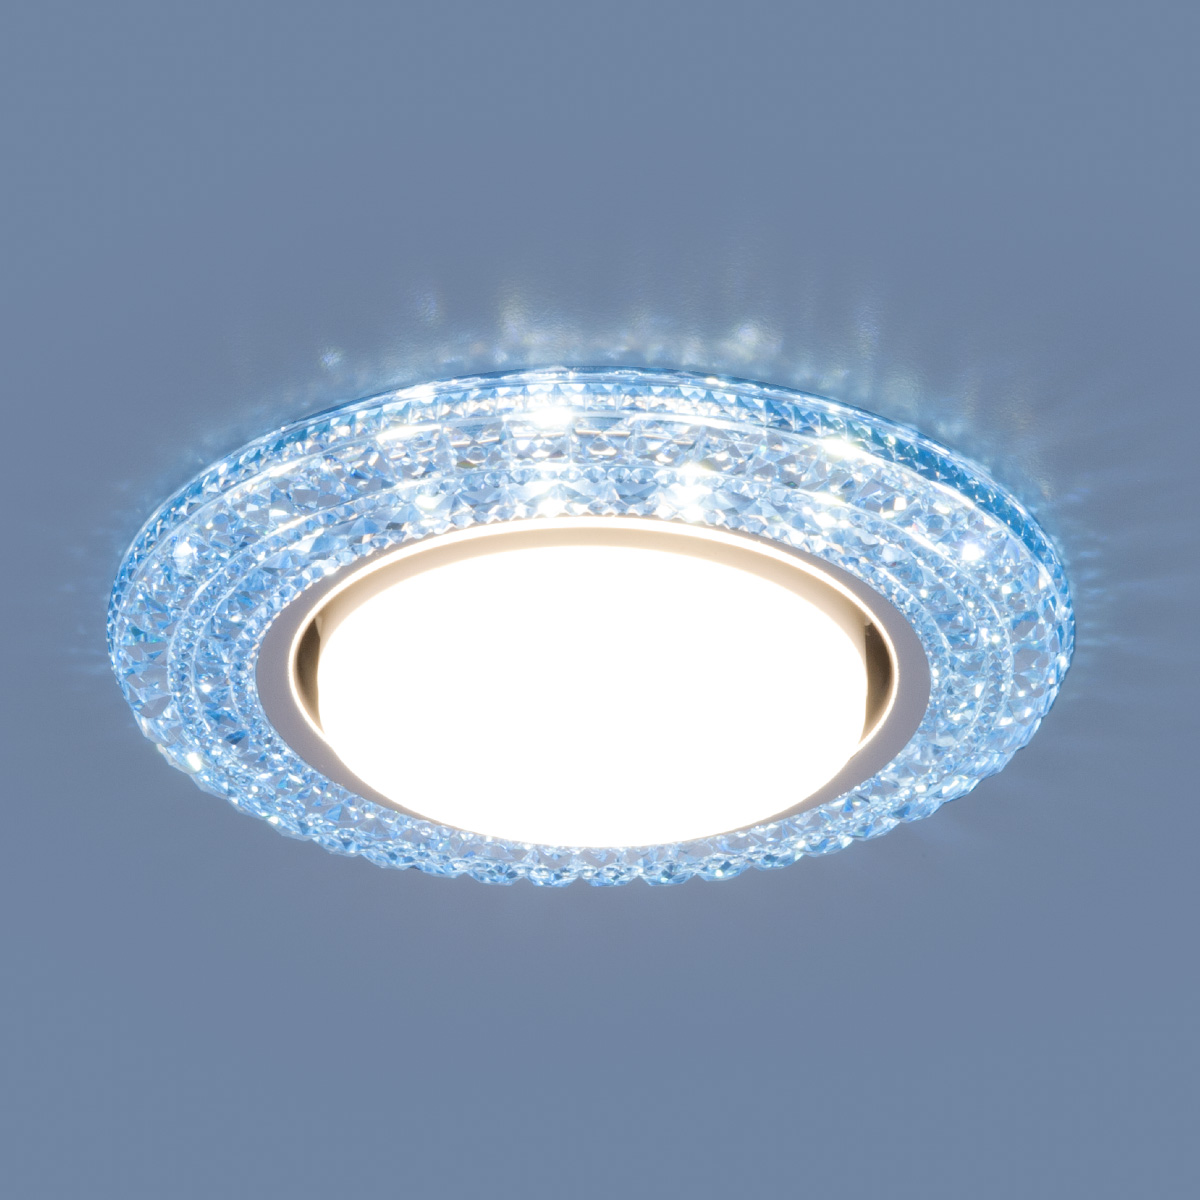 Точечный светильник со светодиодами 3030 GX53 BL синий